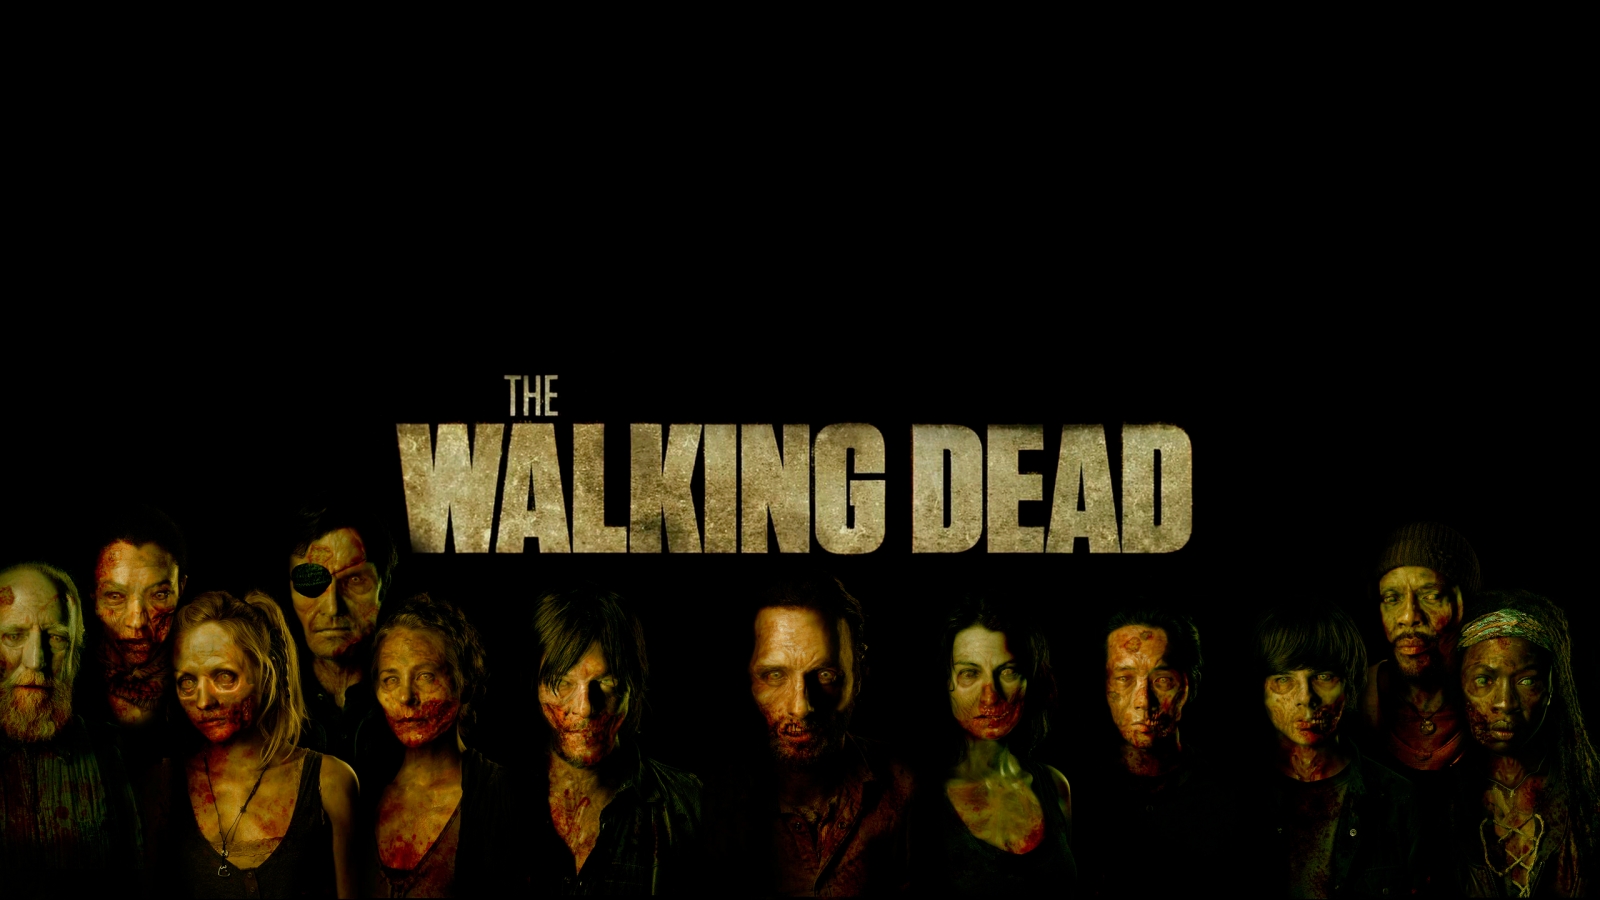 The Walking Dead Poster Art  for 1600 x 900 HDTV resolution